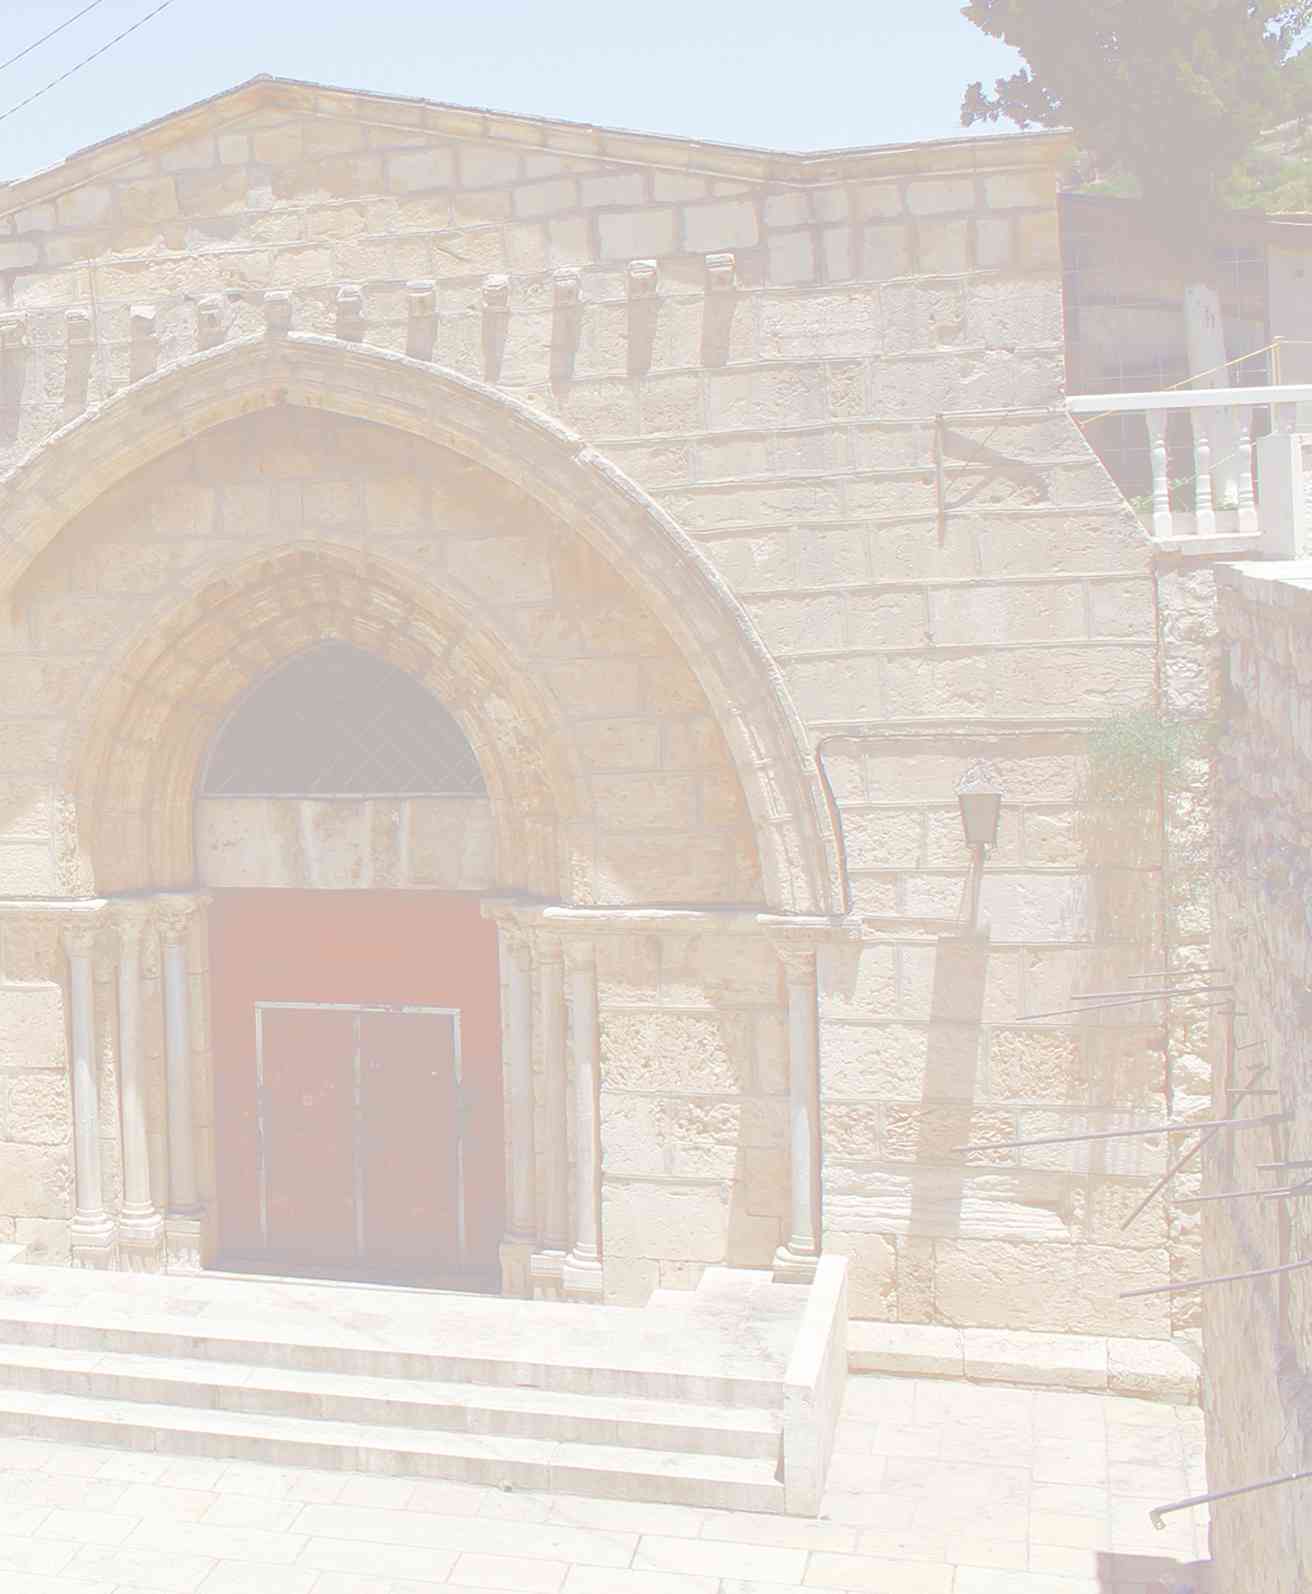 Иерусалим христианский: православному паломнику для прикосновения. Справочник